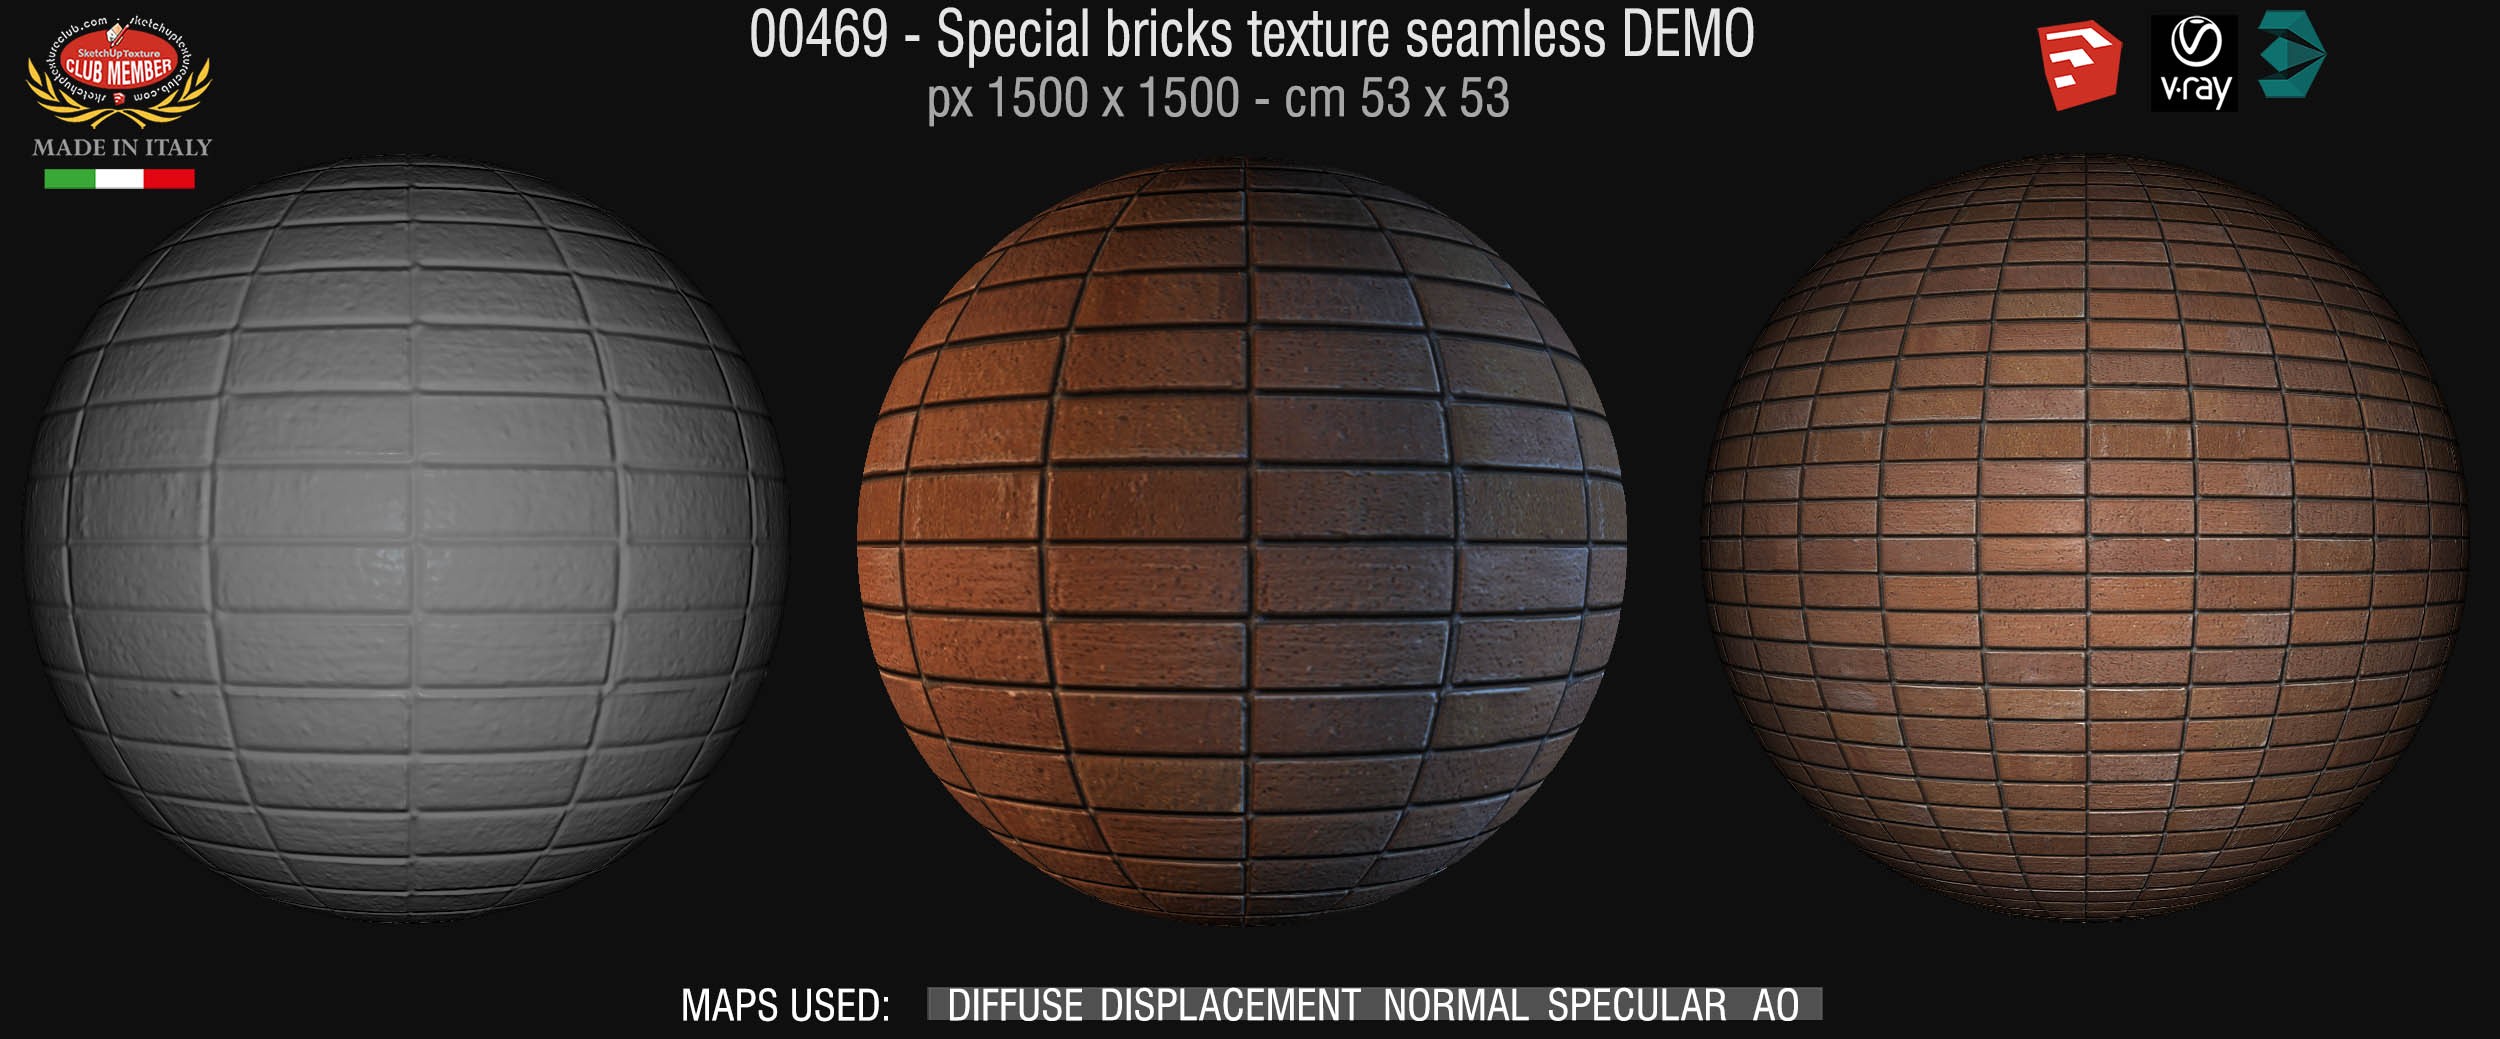 00469 Special bricks texture seamless + maps DEMO